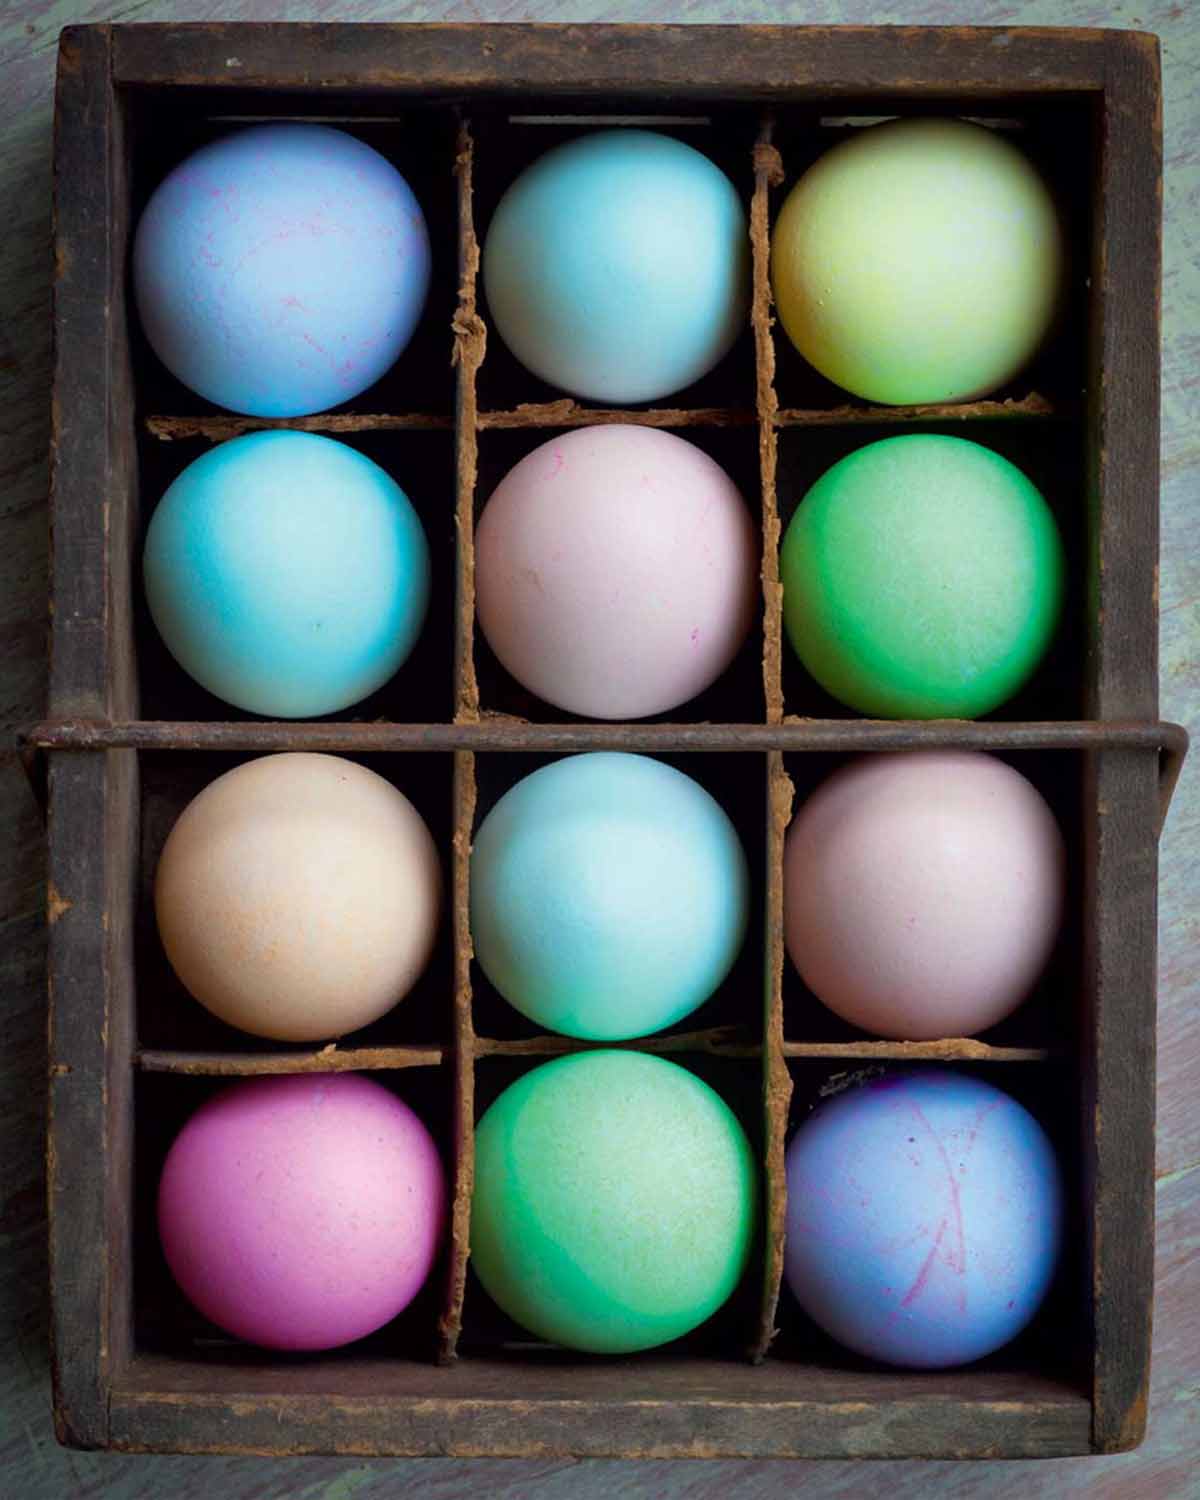 صندوق مليء بمجموعة متنوعة من بيض عيد الفصح المصبوغ.